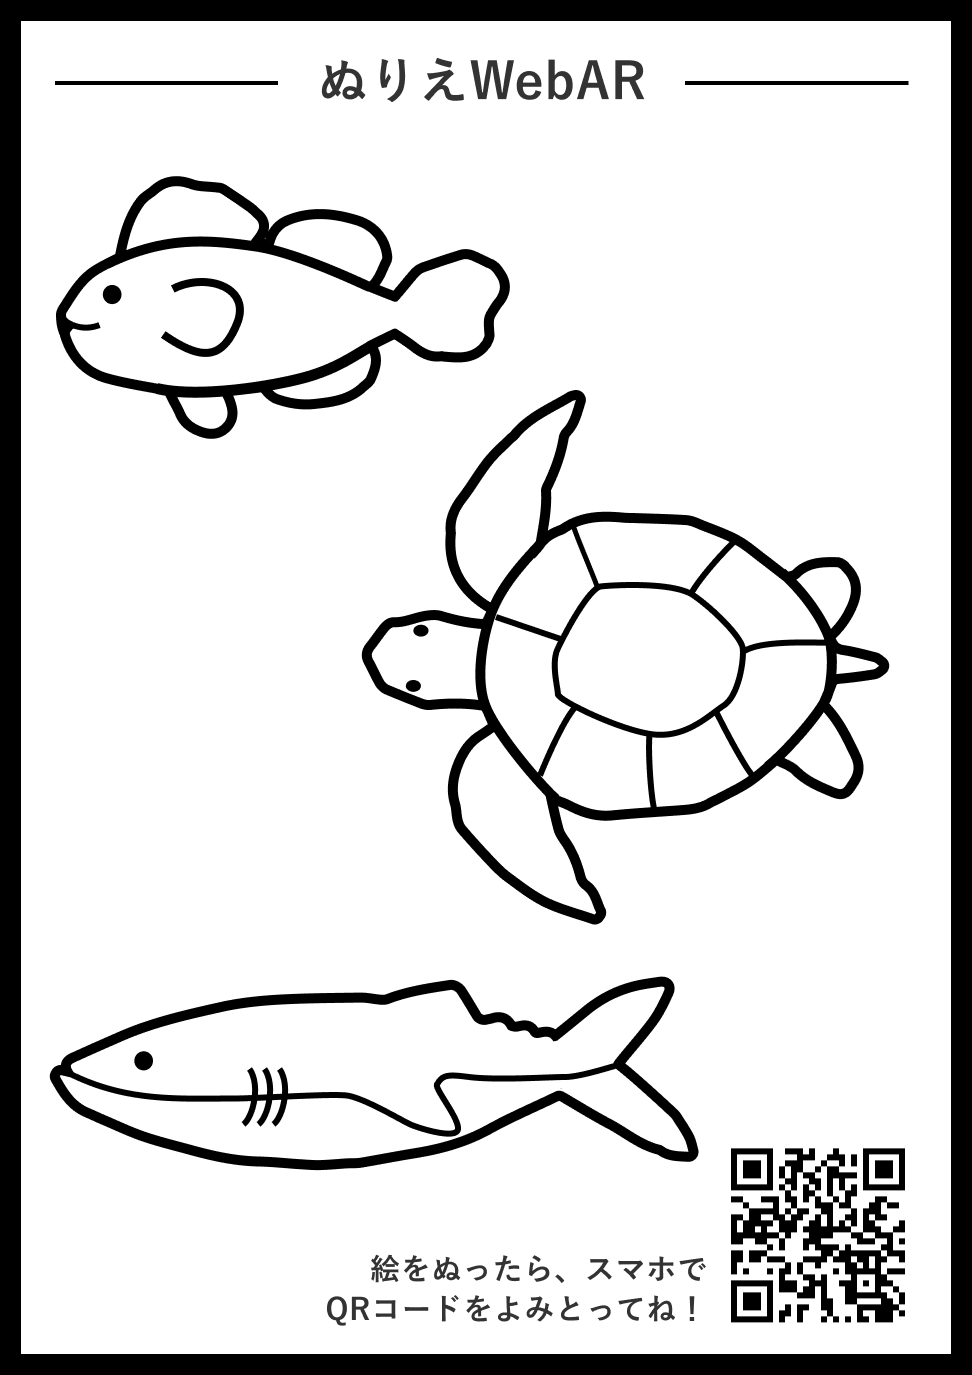 塗り絵で描いた魚が画面内を泳ぎ出す 水族館ぬりえwebar の提供を開始 Kks Web 教育家庭新聞ニュース 教育家庭新聞社